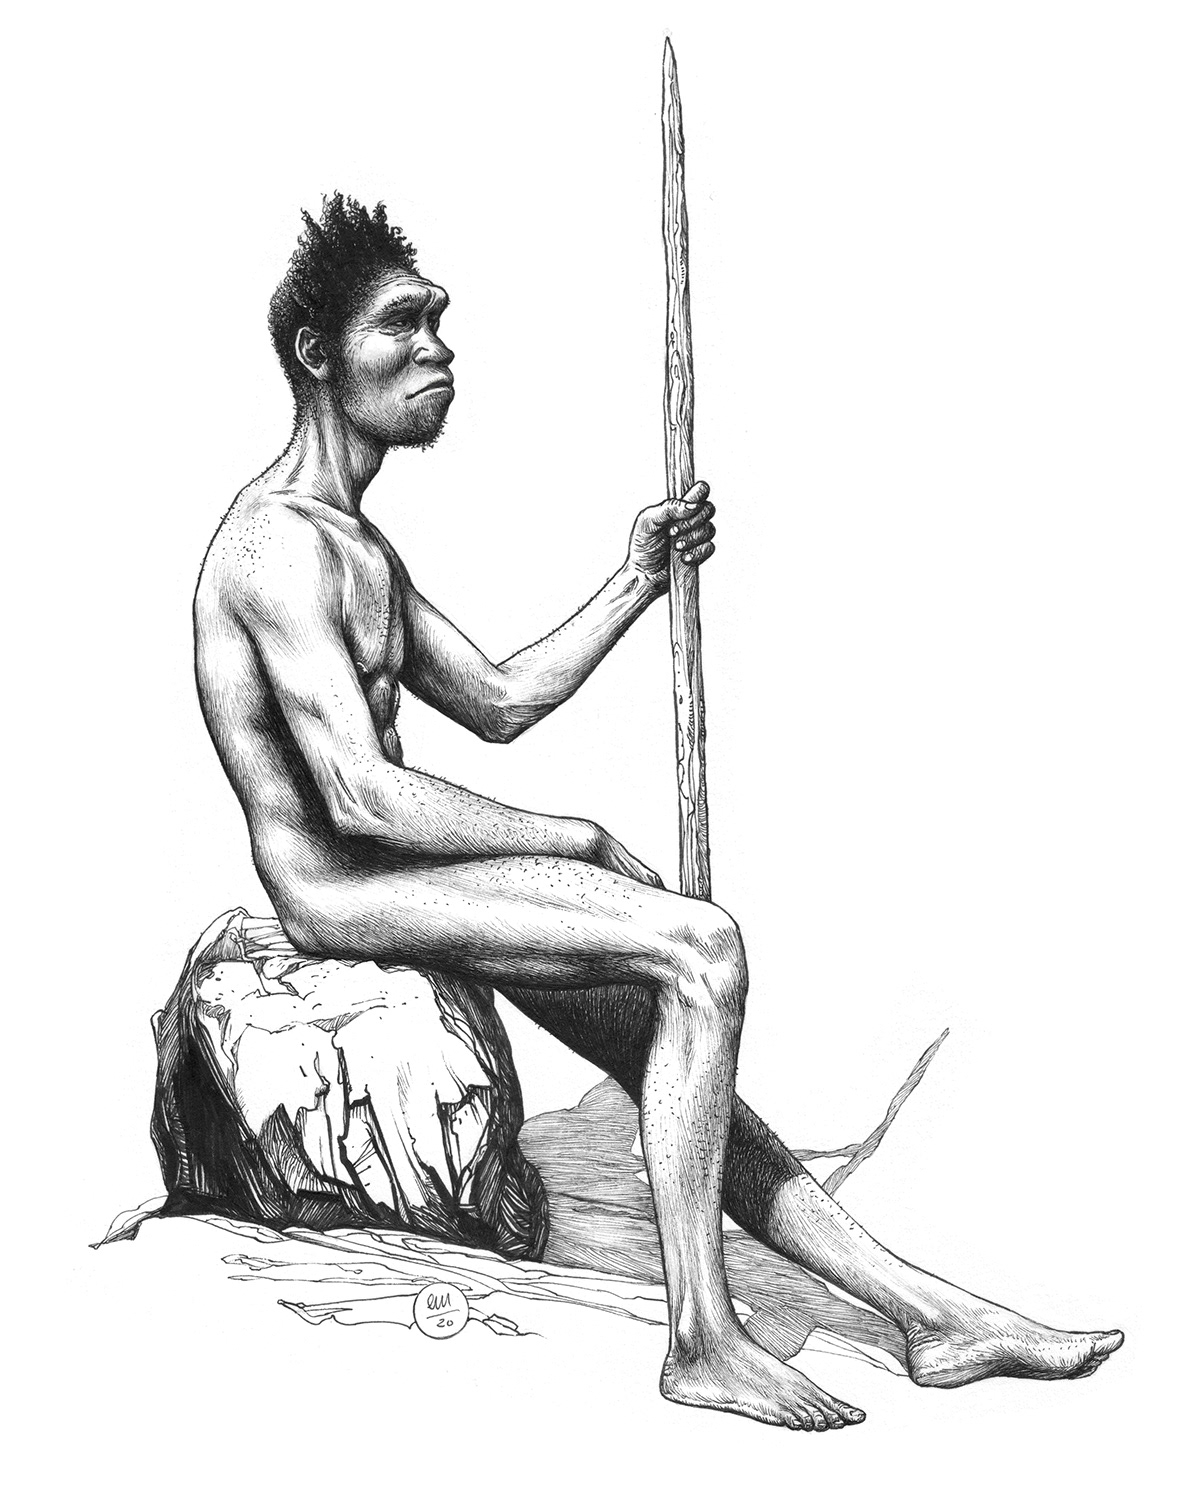 denisova homo human evolution ILLUSTRATION  illustrazione neanderthal paleoarte   portrait Prehistory preistoria